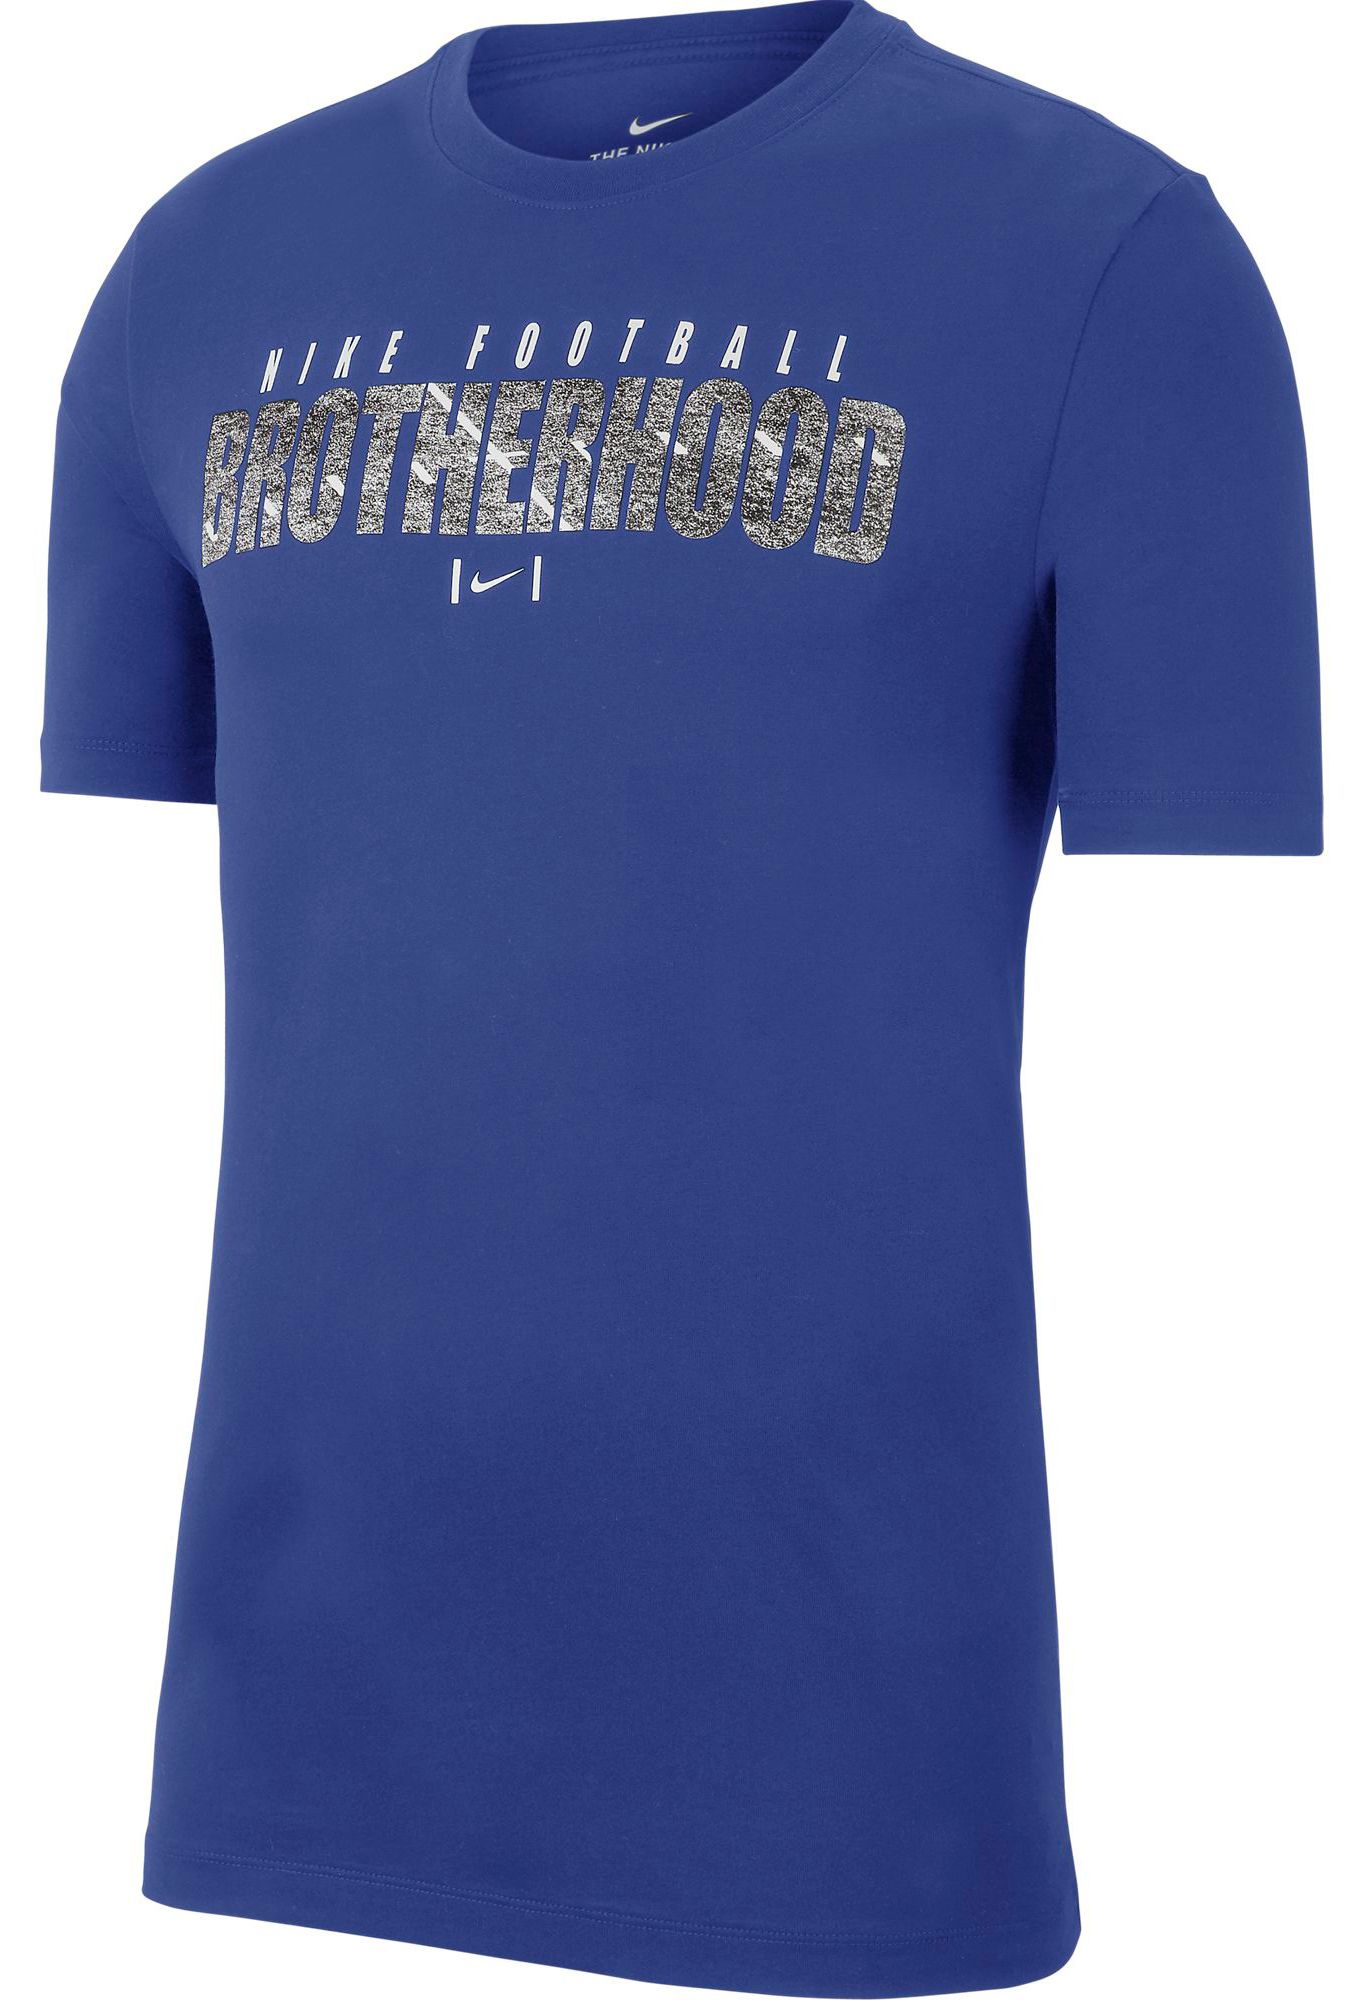 Brotherhood Dri-Fit Football T-Shirt 